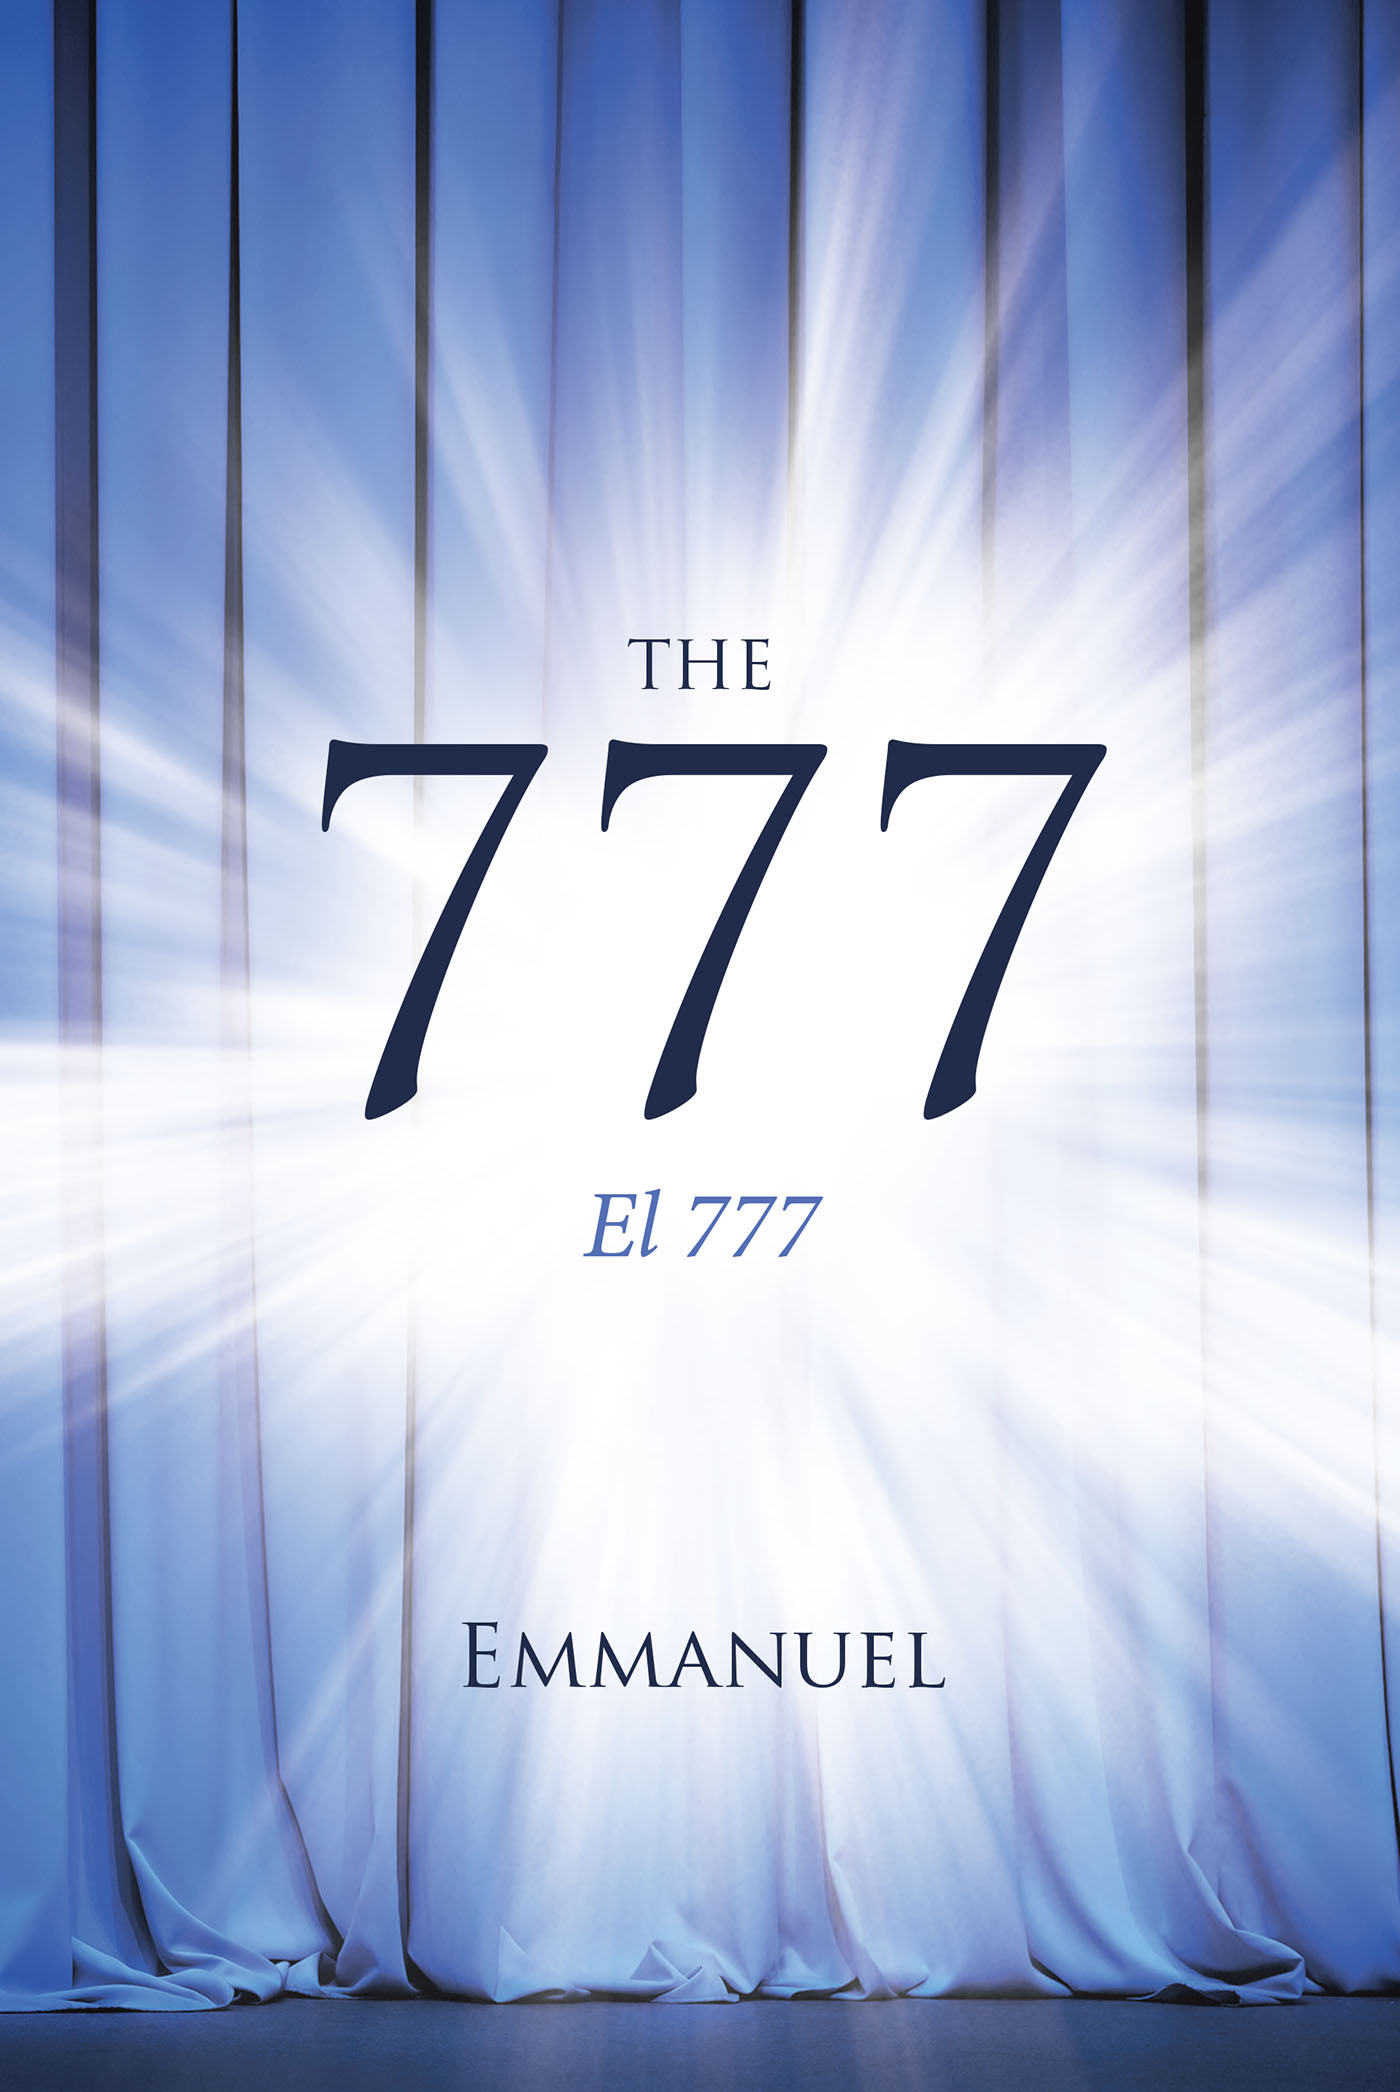 Le numéro de Dieu est-il 777?